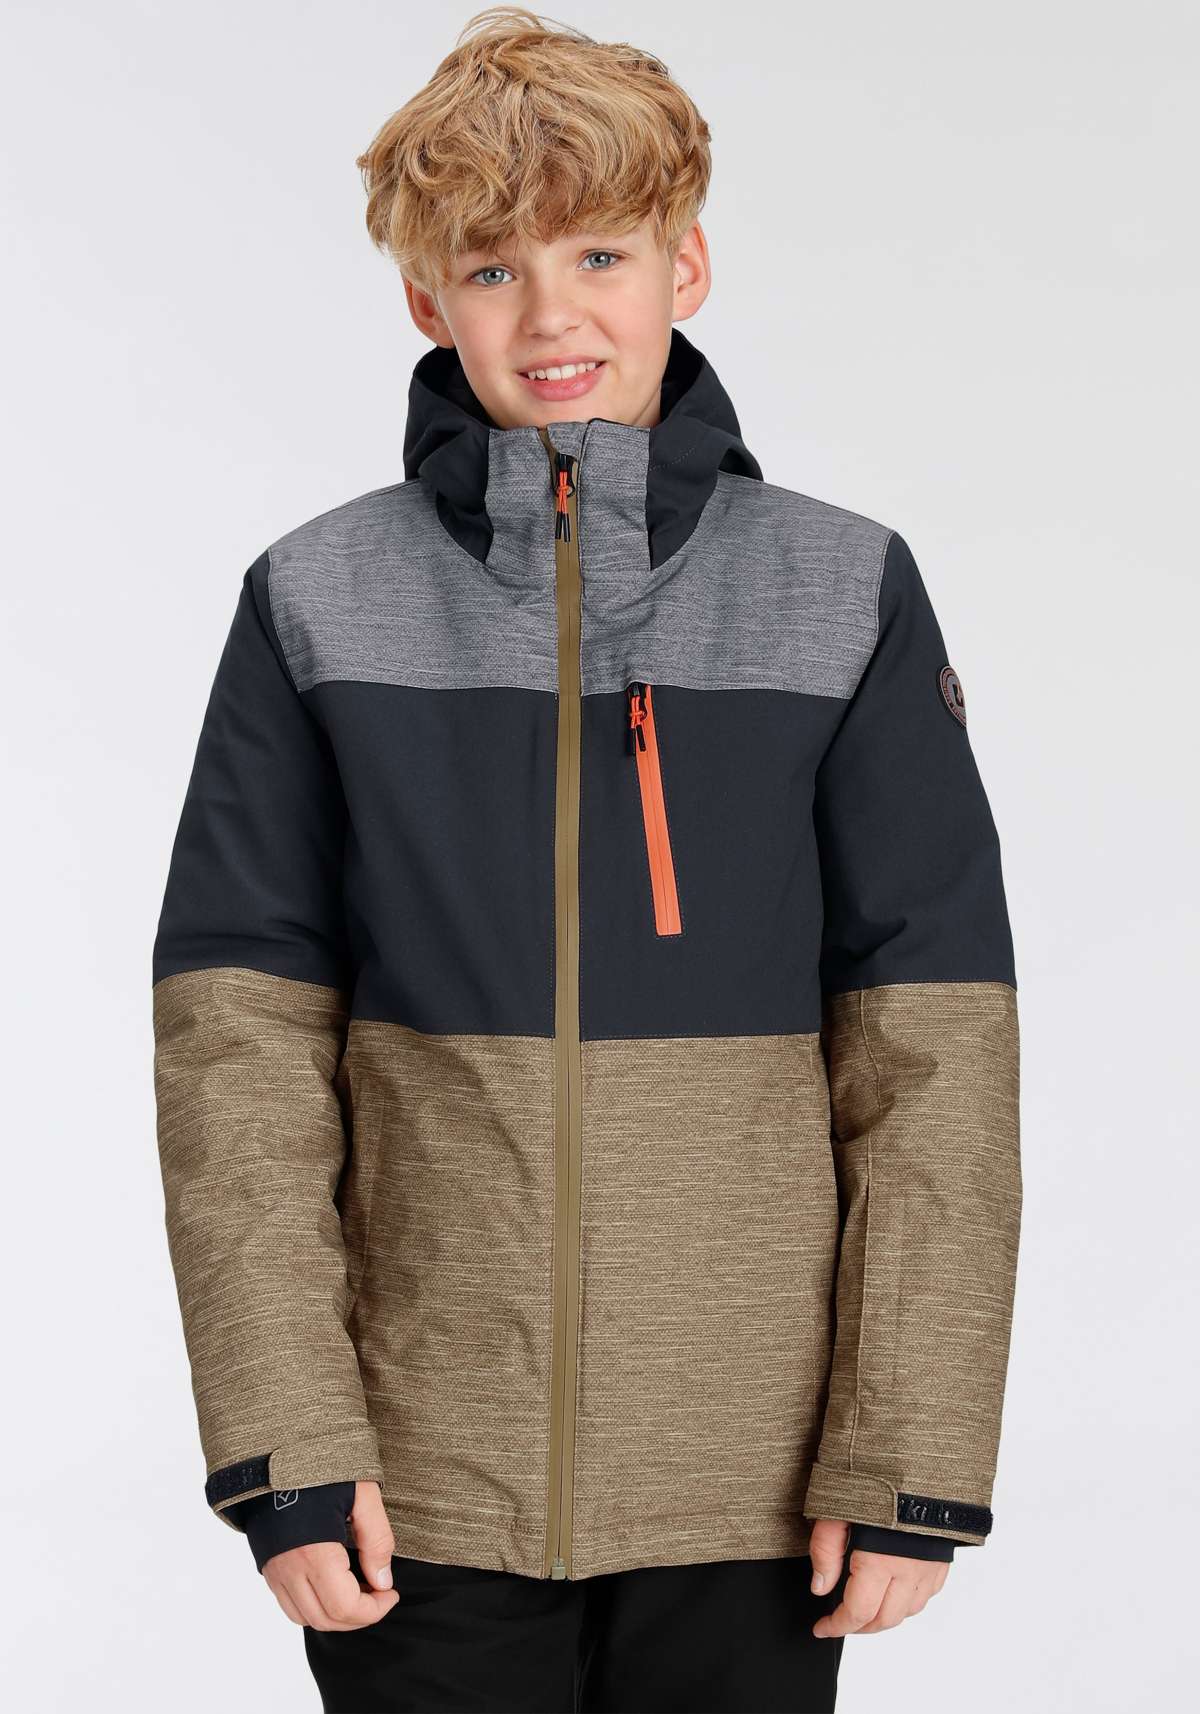 Лыжная куртка с капюшоном, ветрозащитная, водонепроницаемая, дышащая и